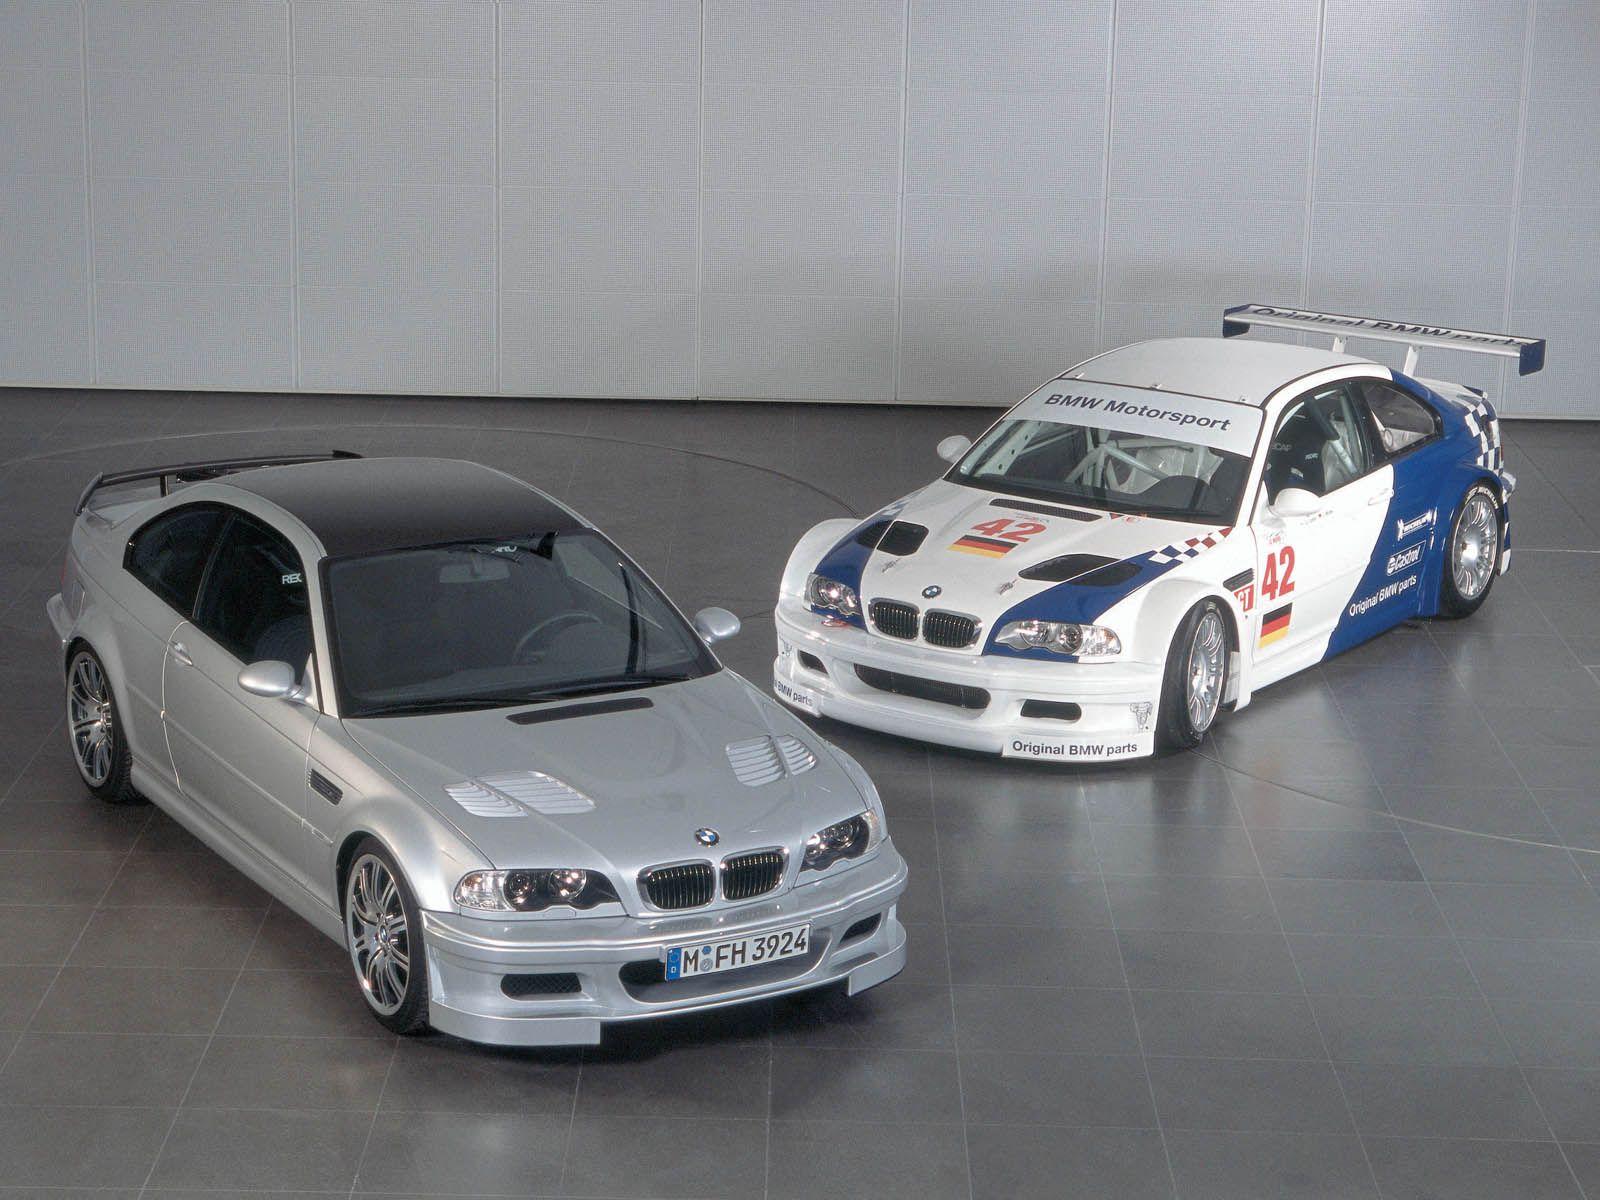 BMW Super Bild Of The Day E M GTR